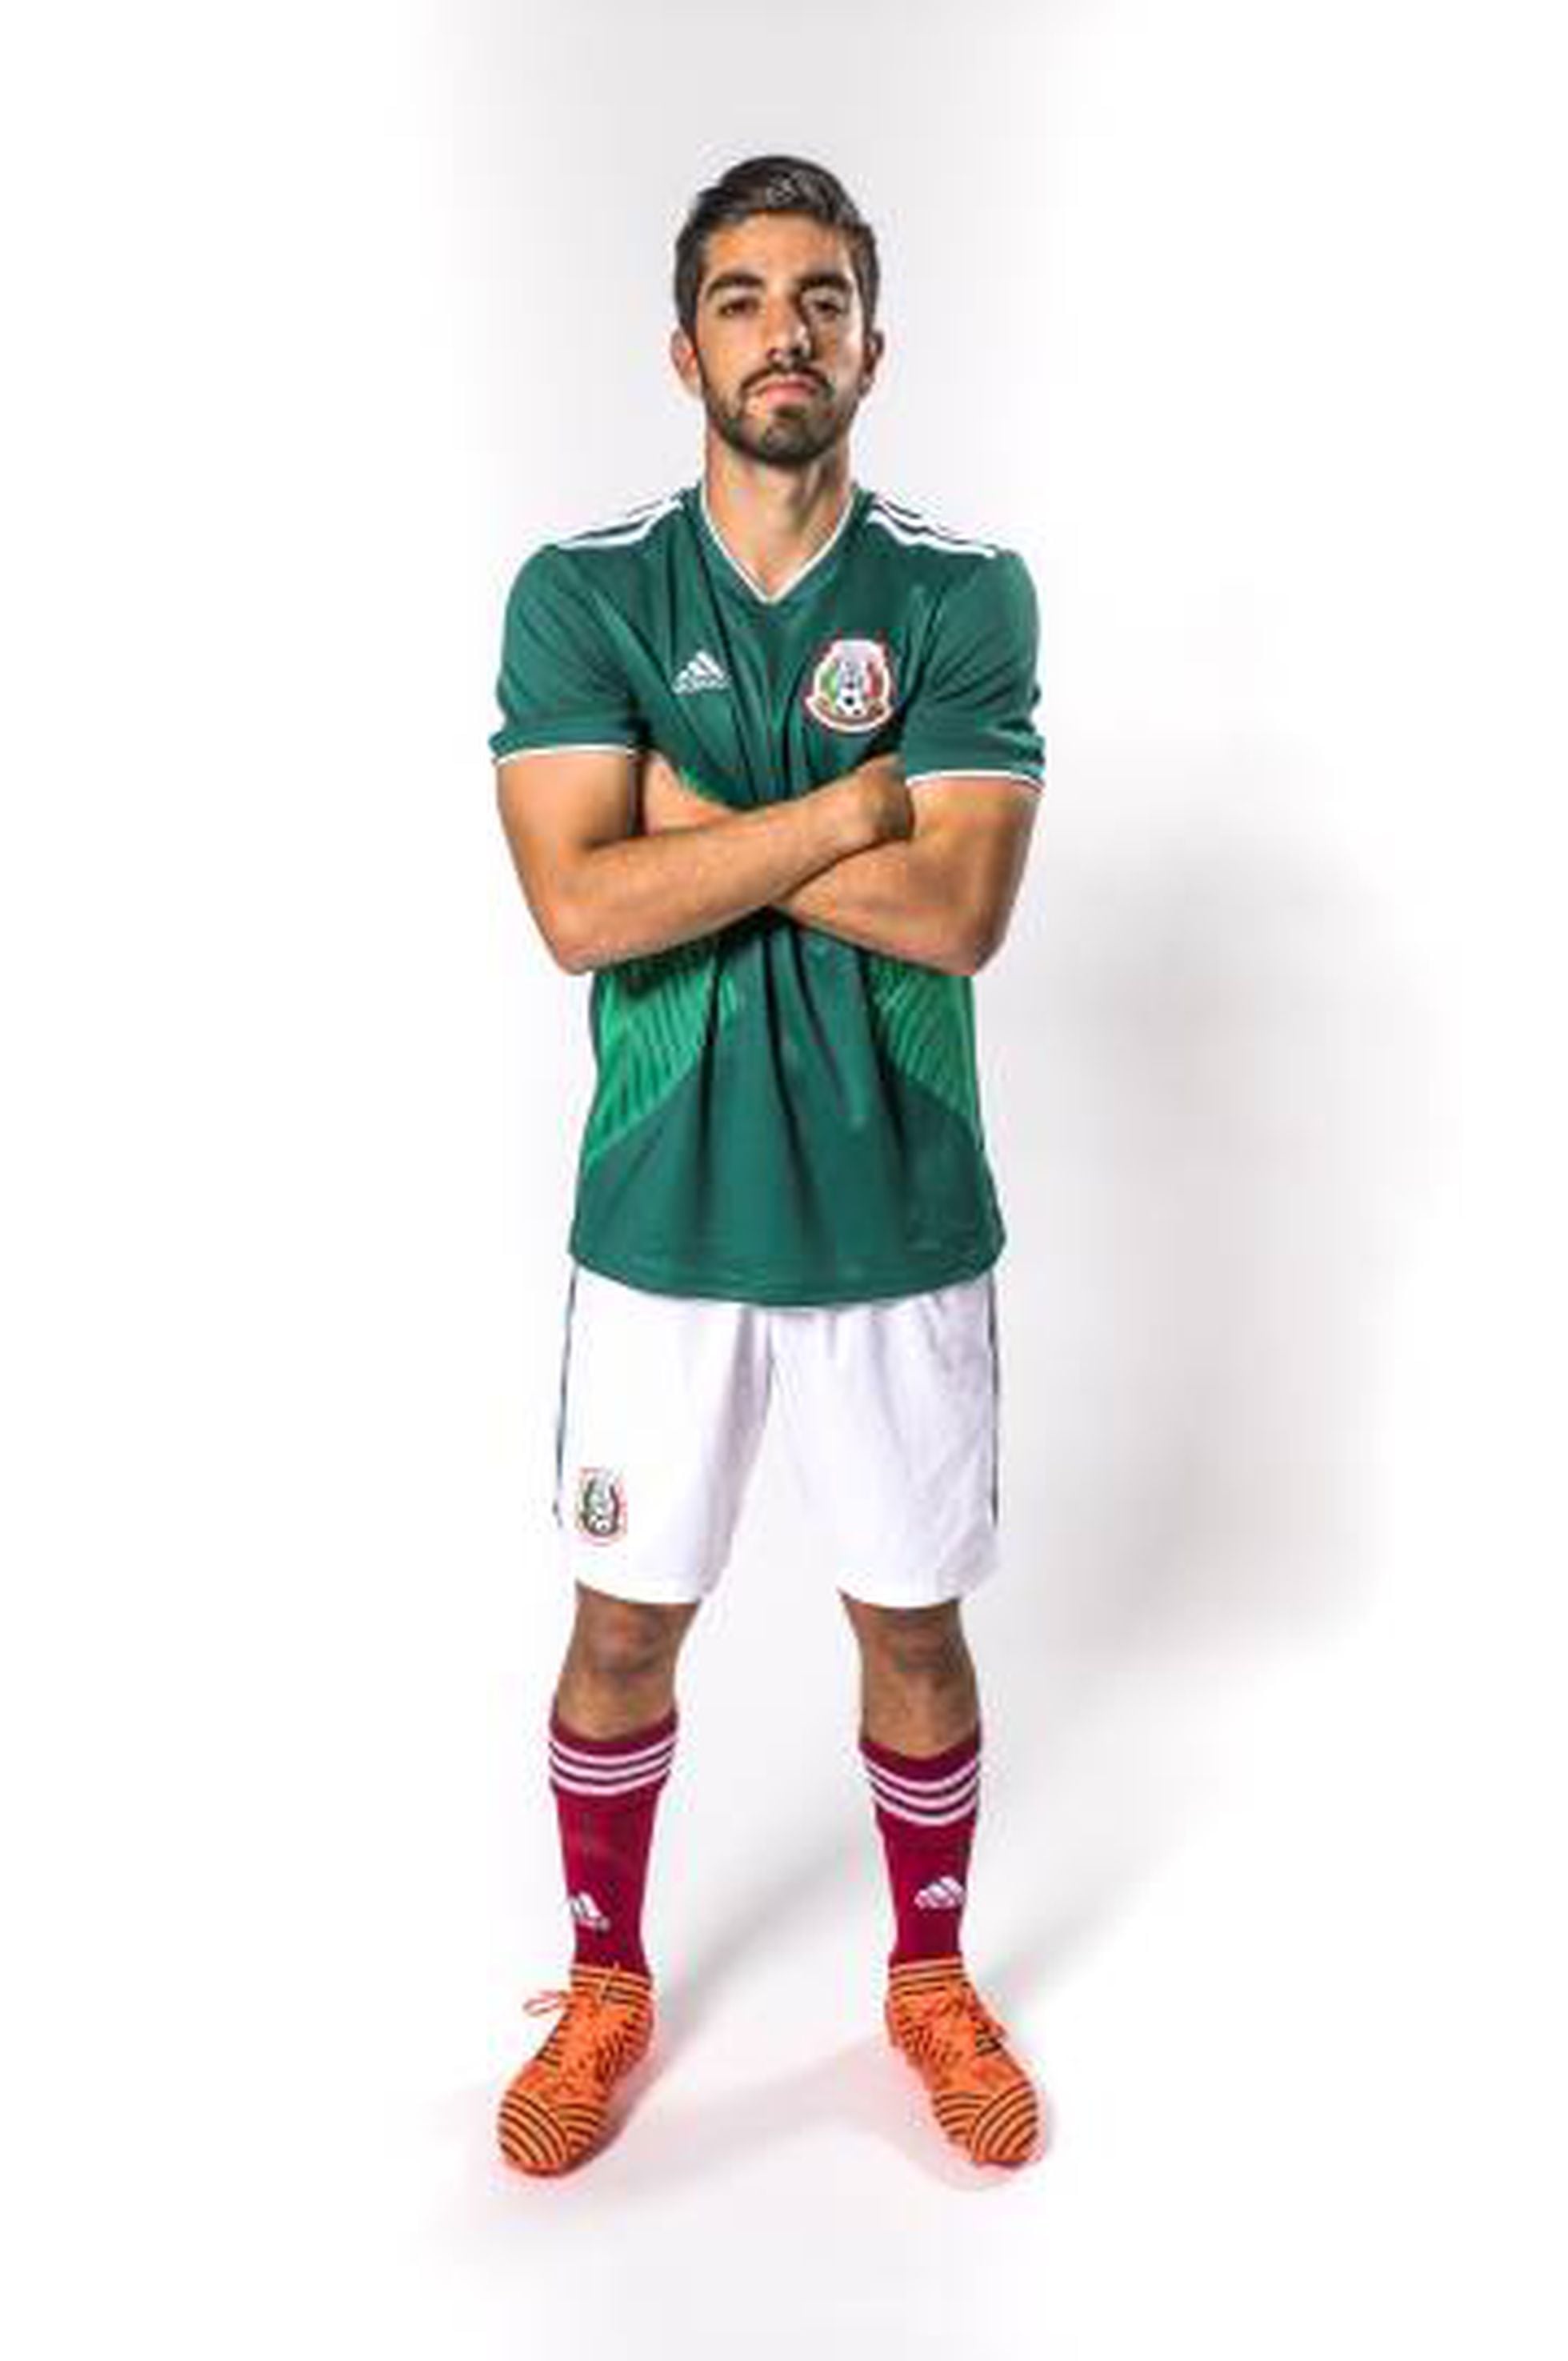 La selección de México presenta el uniforme que en el Mundial de Rusia | Deportes | EL PAÍS